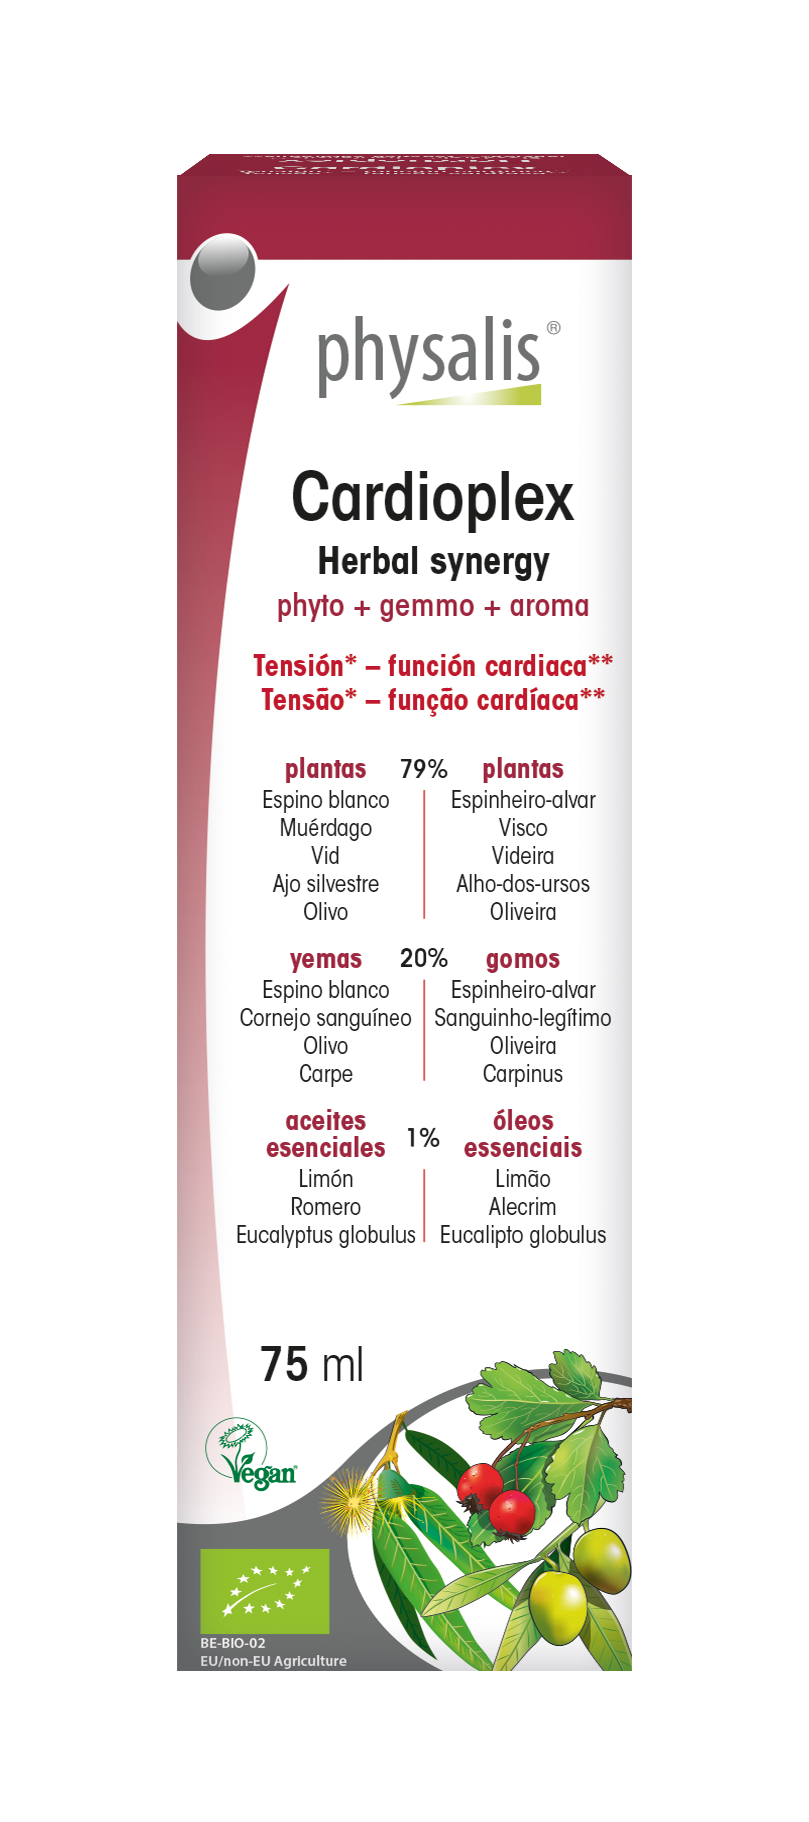 Cardioplex Herbal synergy